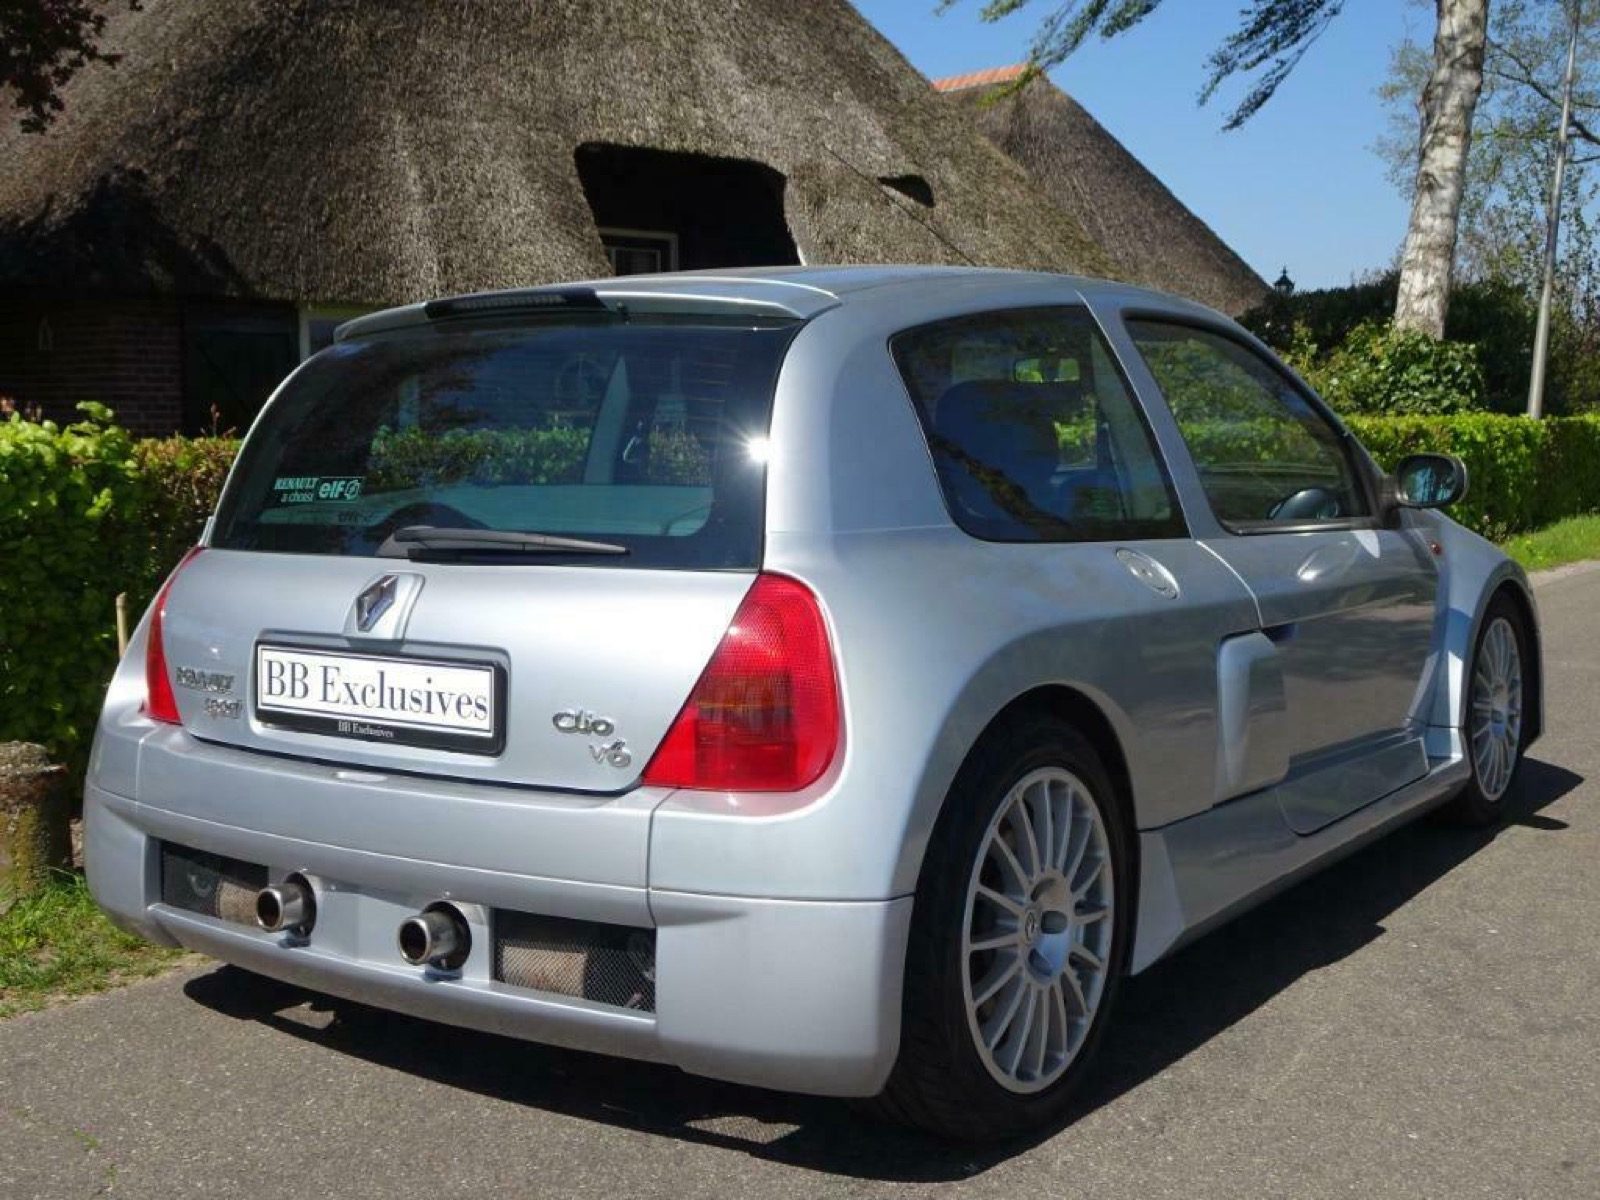 ontsnapping uit de gevangenis Centimeter Feat Dit is de goedkoopste Clio V6 van Nederland - Autoblog.nl